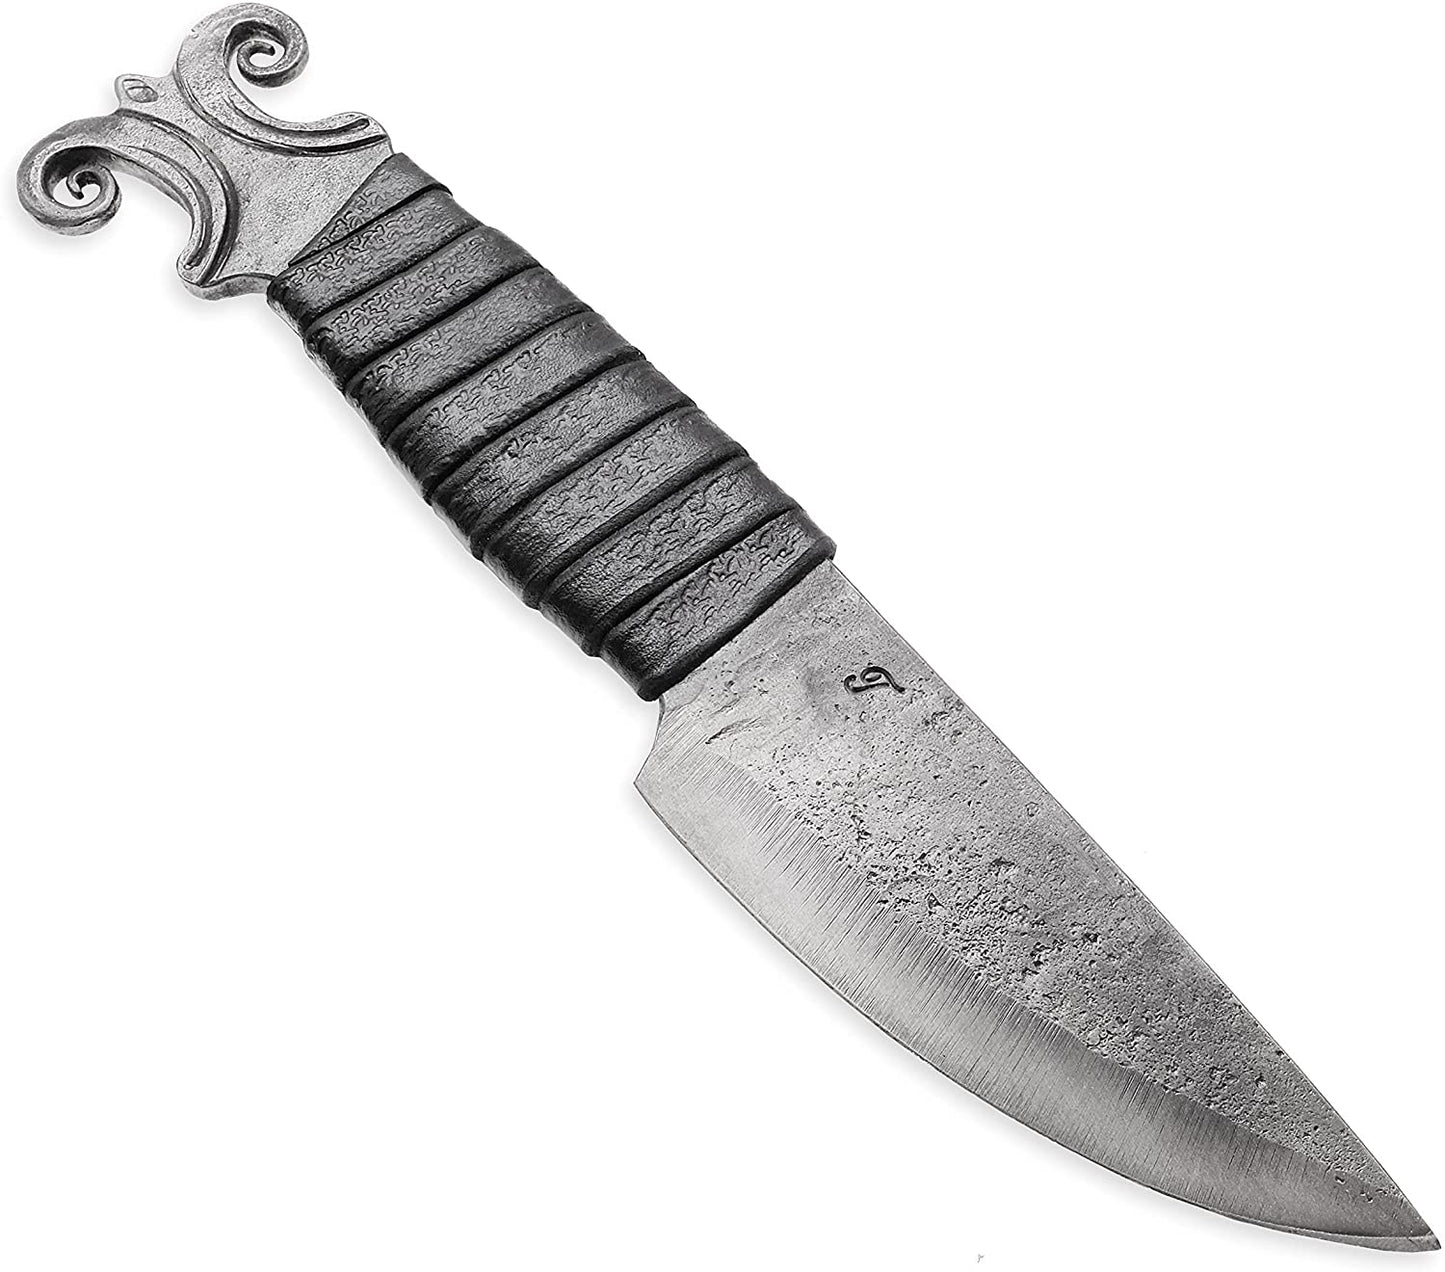 Kovaný vikingský nůž Beran s pochvou